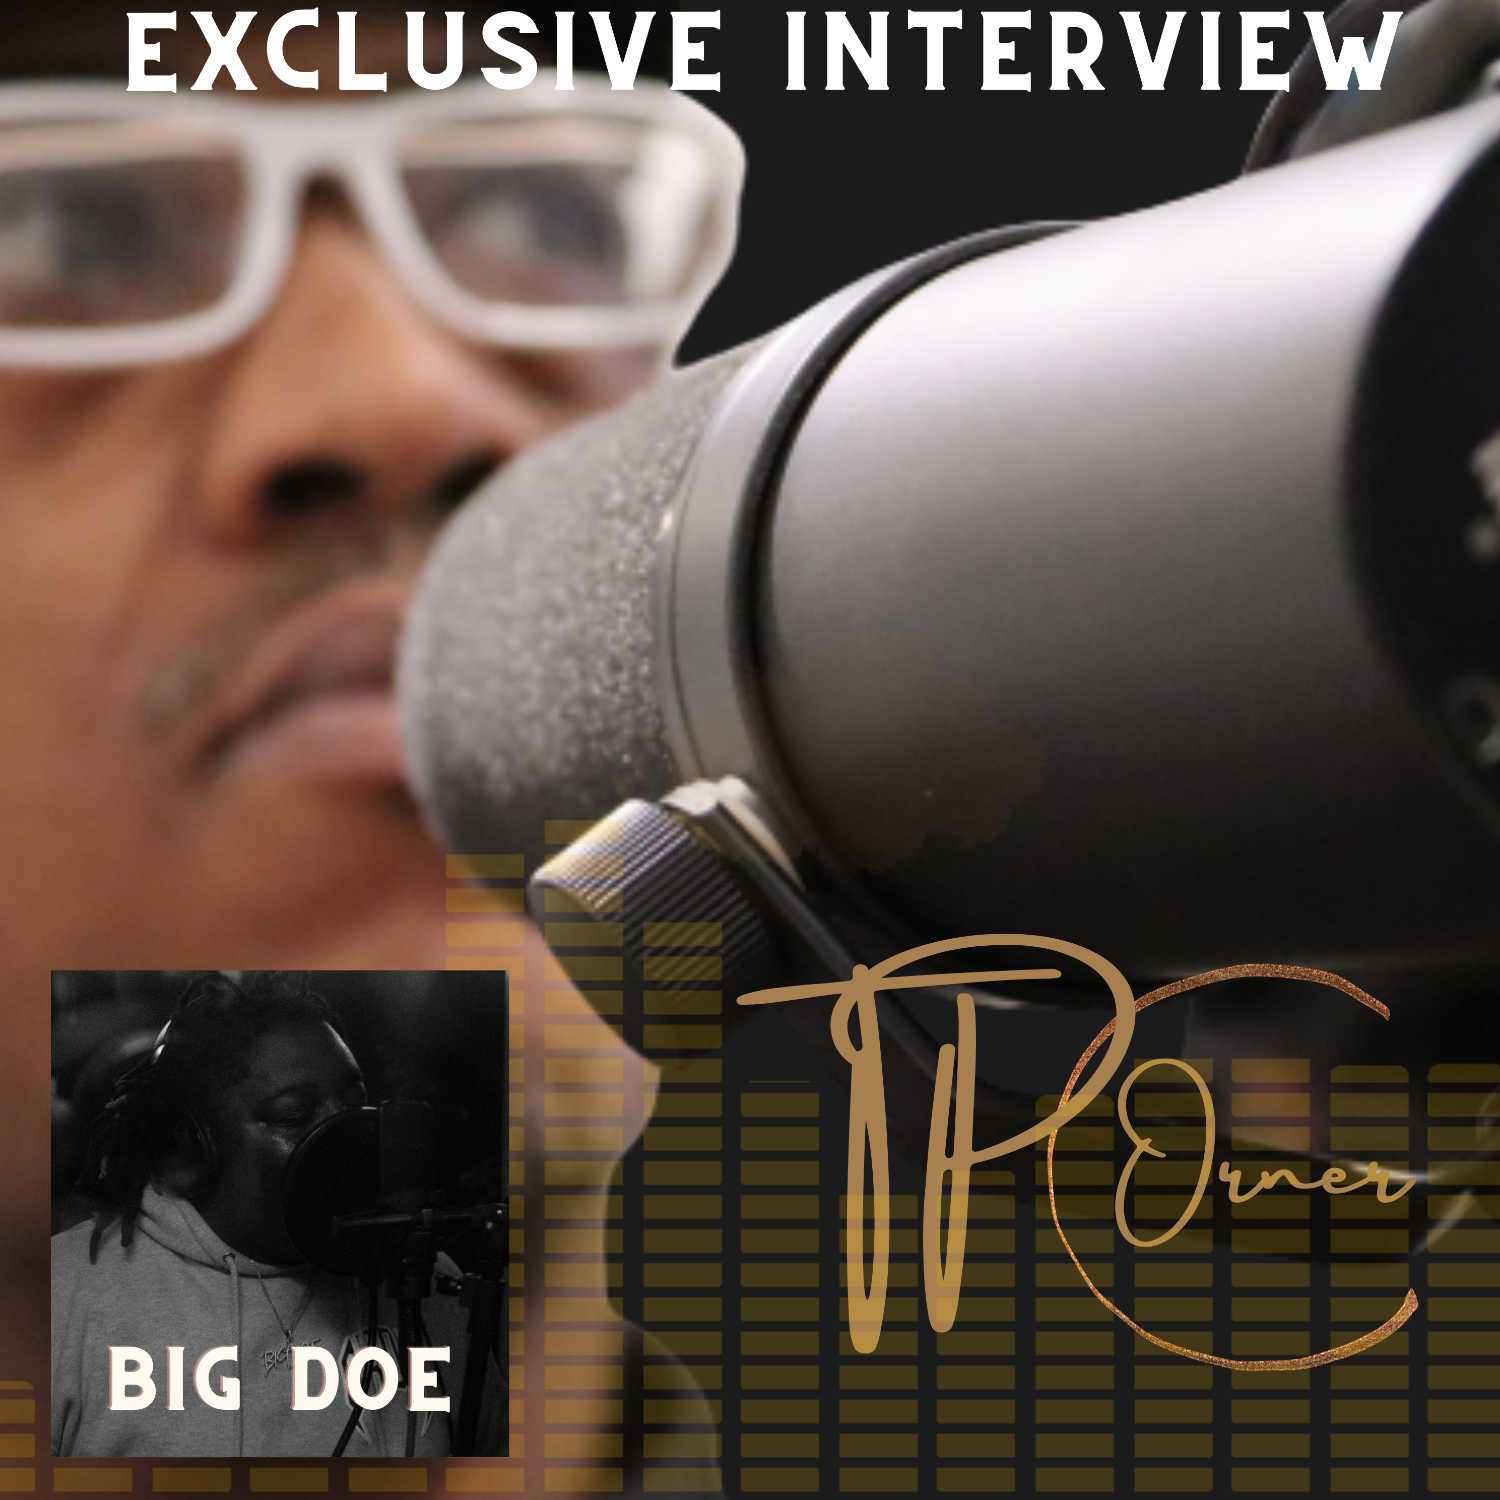 TPC EPISODE 50 EXCLUSIVE INTERVIEW WITH INDIE ARTIST BIG DOE